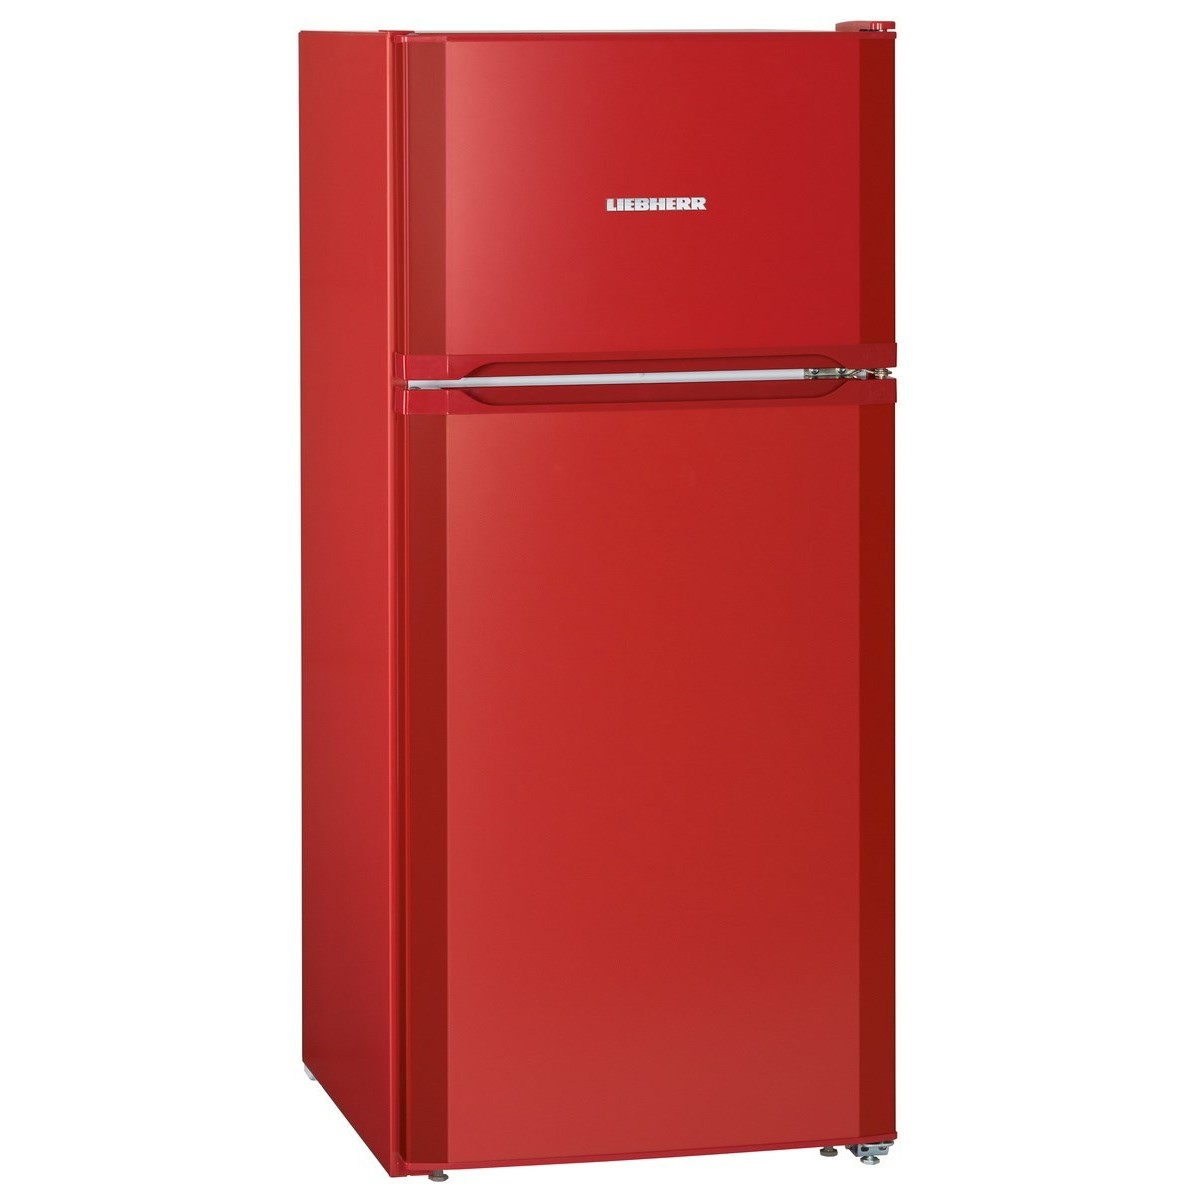 Купить холодильник в ярославле недорого. Холодильник Liebherr CTPSL 2121. Холодильник Liebherr CTP 2121. Холодильник Liebherr красный красный. Холодильник Либхер красный.